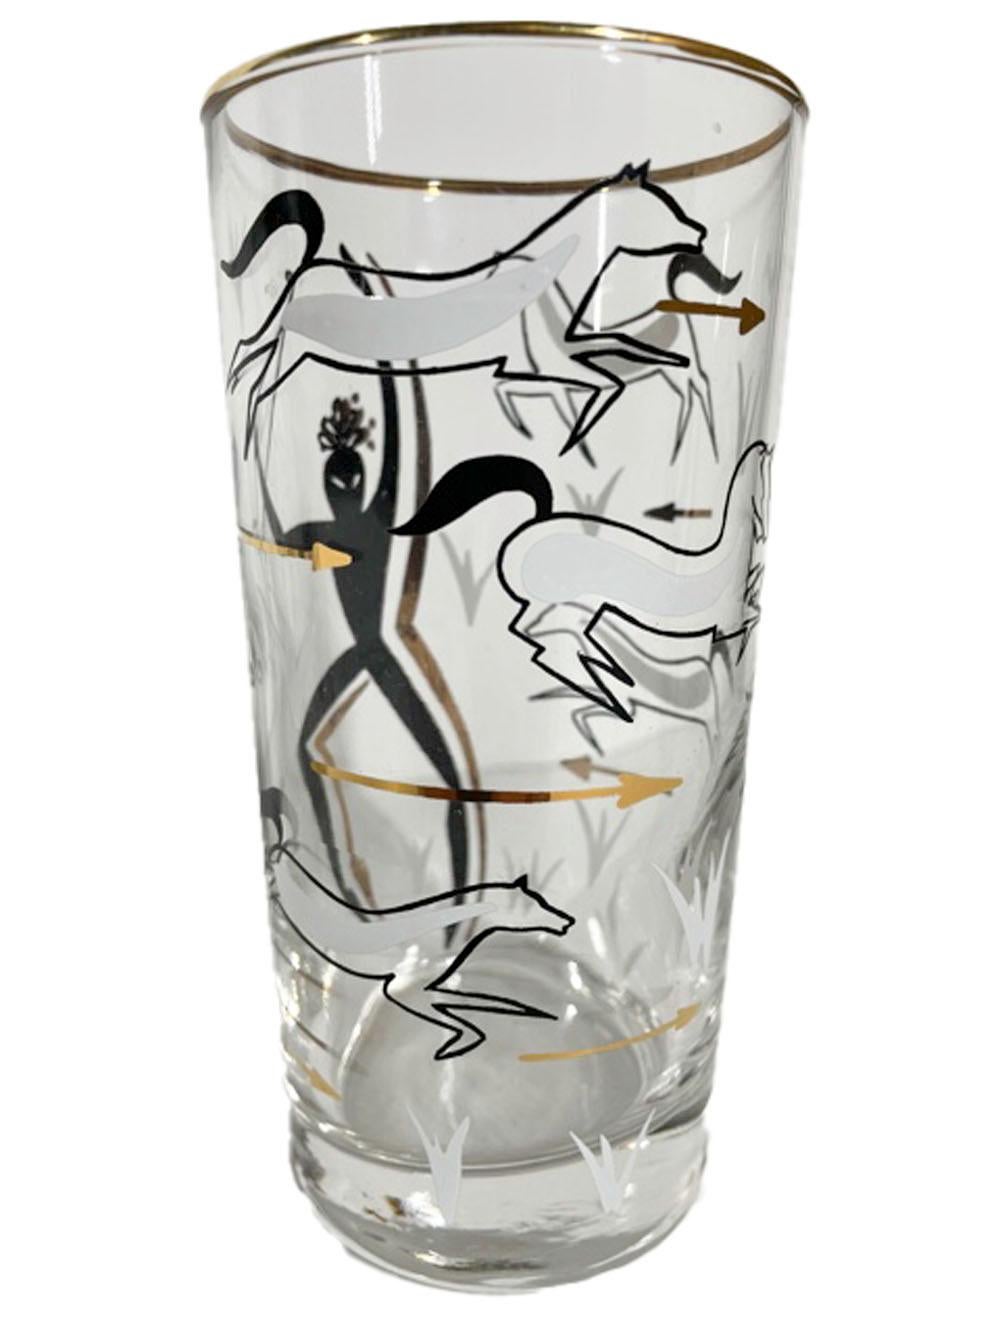 Acht moderne Highball-Gläser aus der Jahrhundertmitte, verziert mit schwarzer und weißer Emaille und 22-karätigem Gold, die einen Jäger mit Bogen inmitten von rennenden Pferden und fliegenden Pfeilen zeigen.